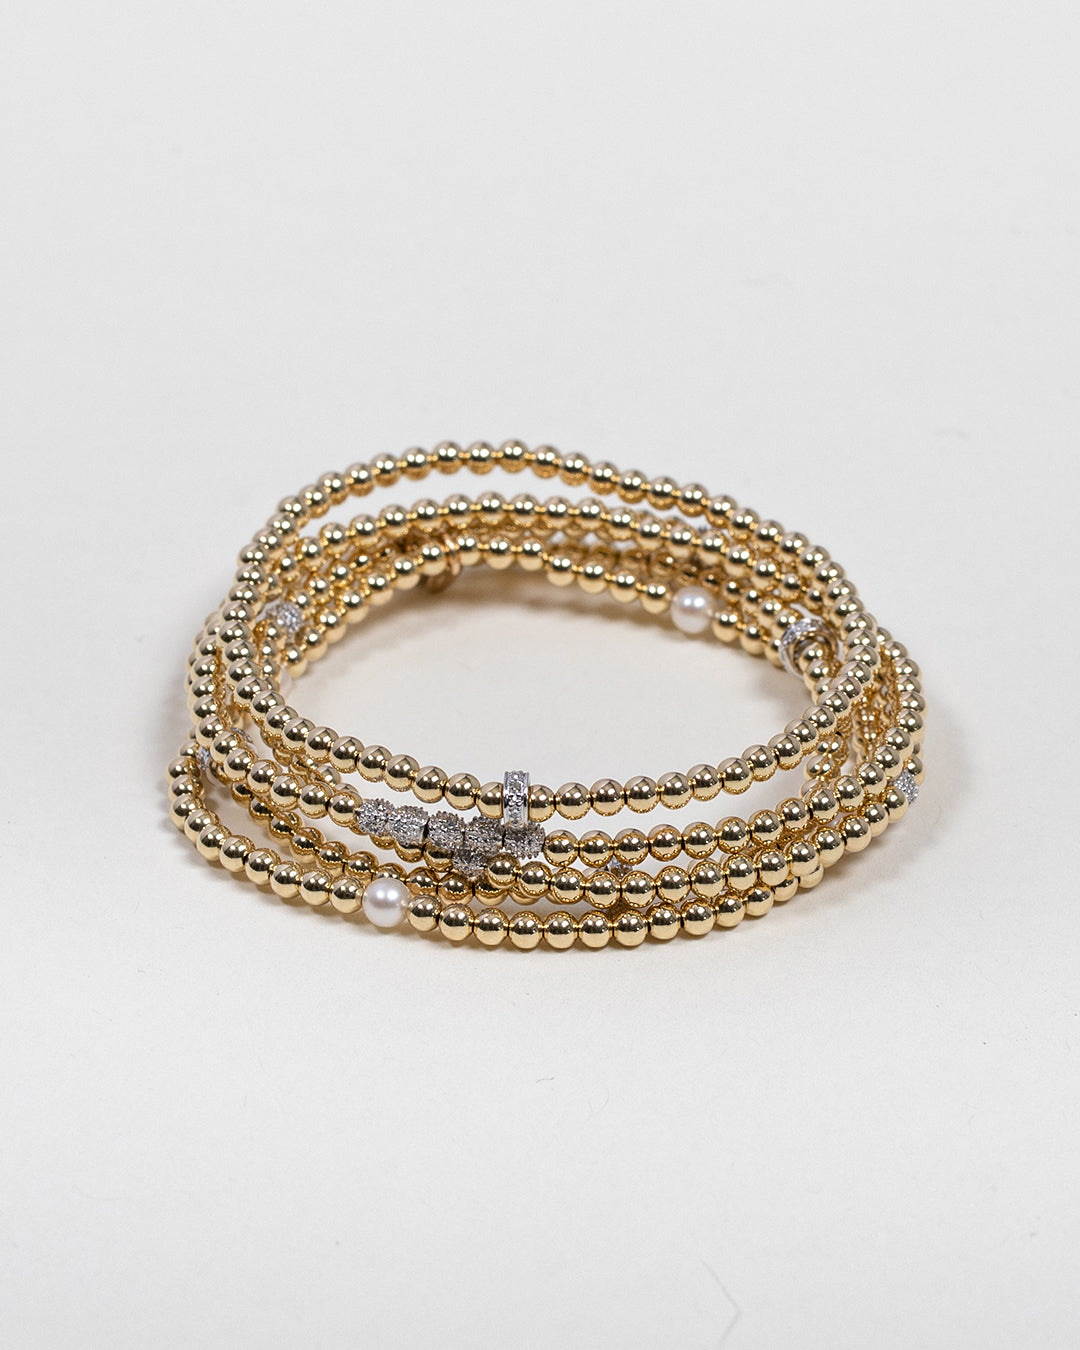 Wholesale Acrylic Beads Letter Stretch Bracelets 